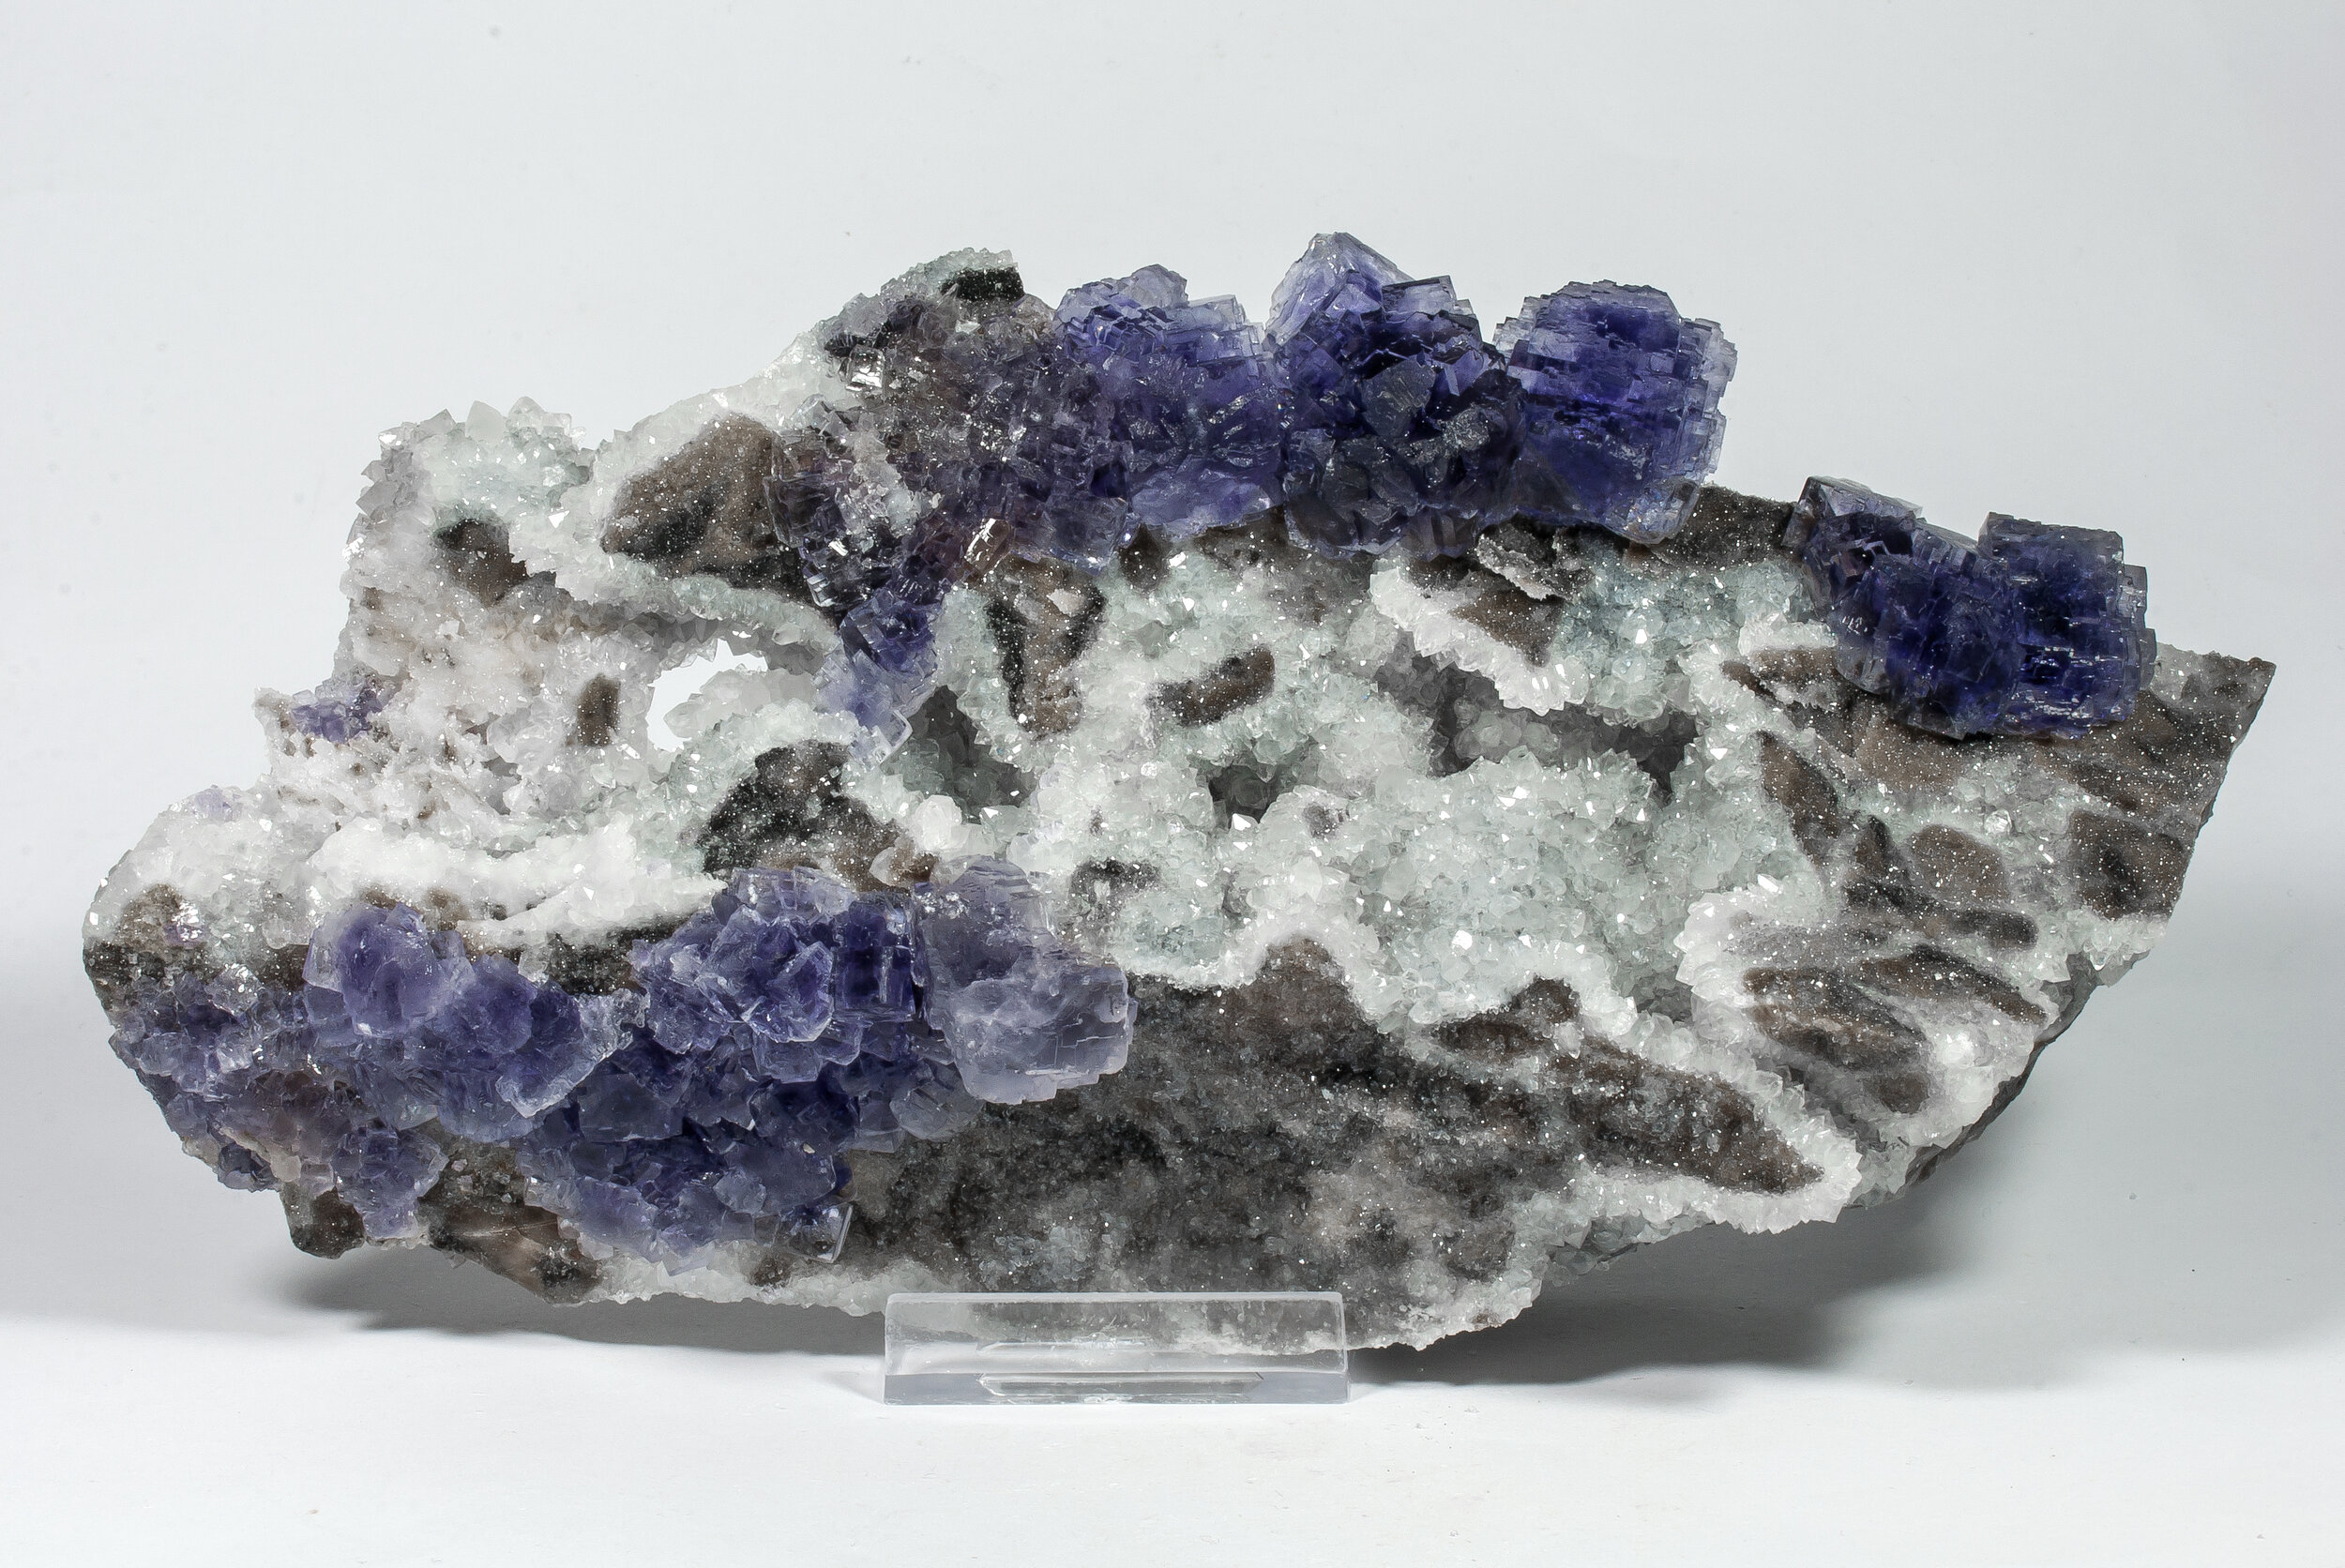 specimens/s_imagesAO1/Fluorite-NAB88AO1f.jpg